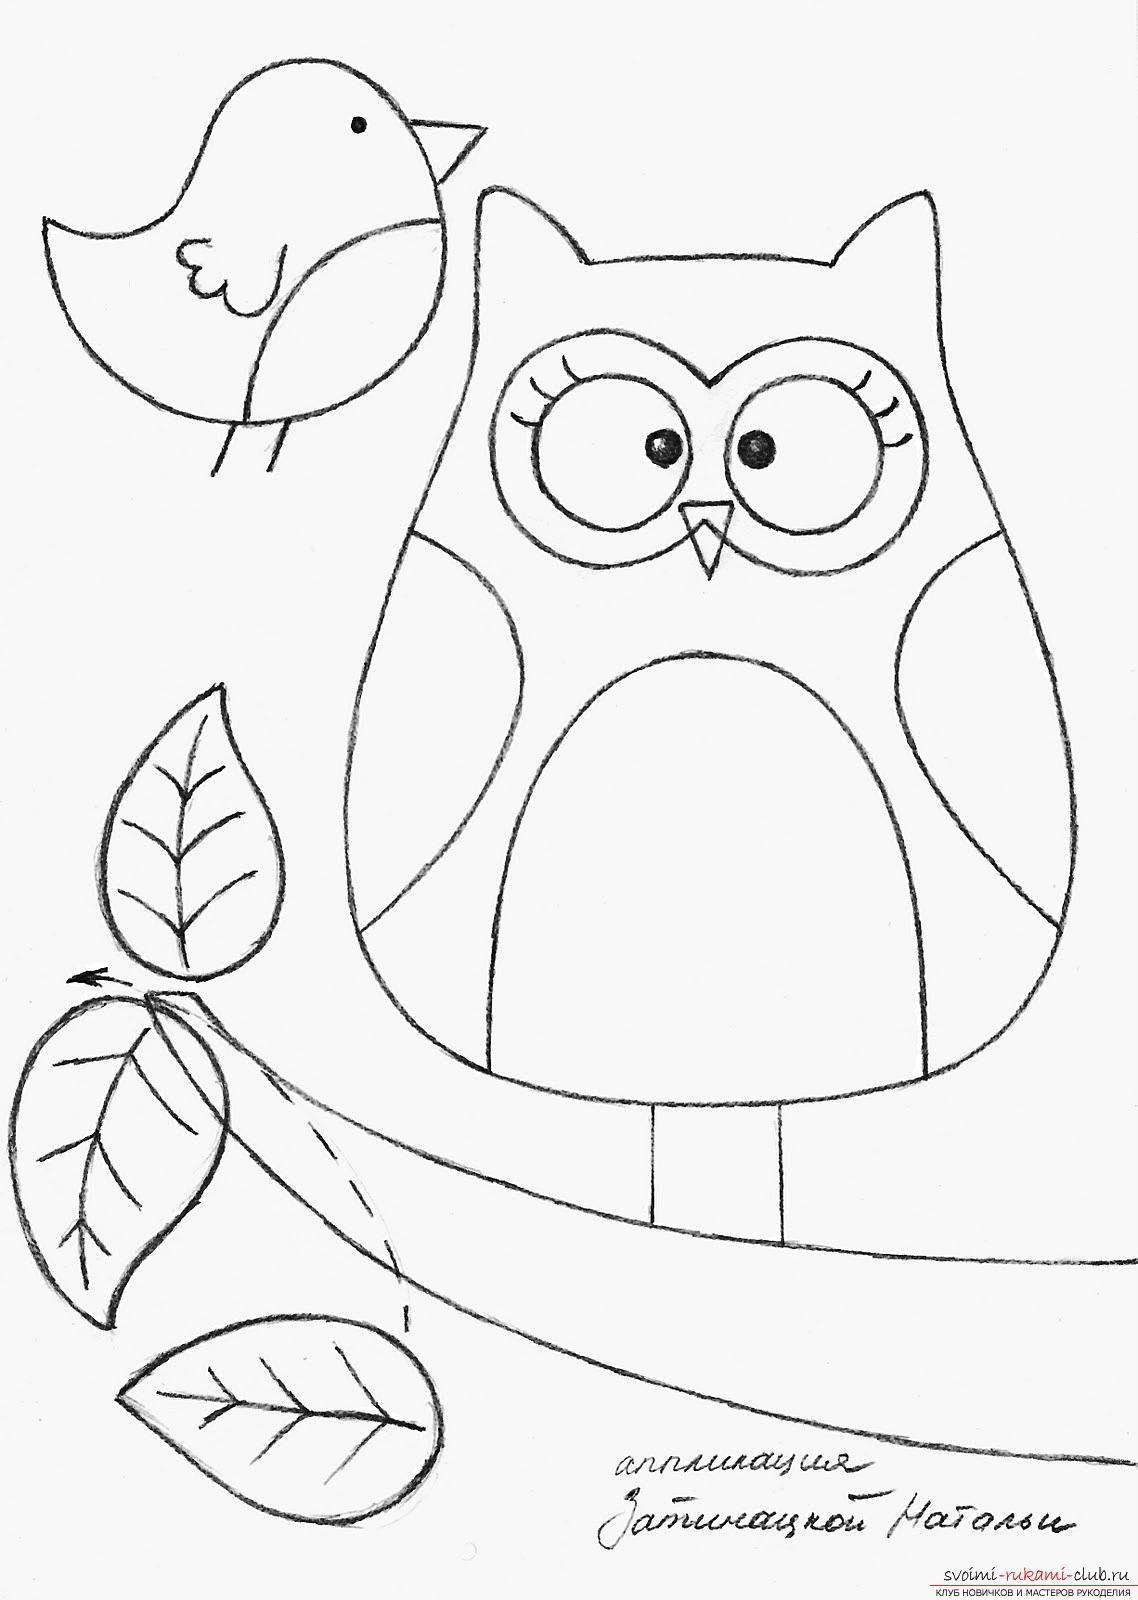 owl pillow appliqué pattern